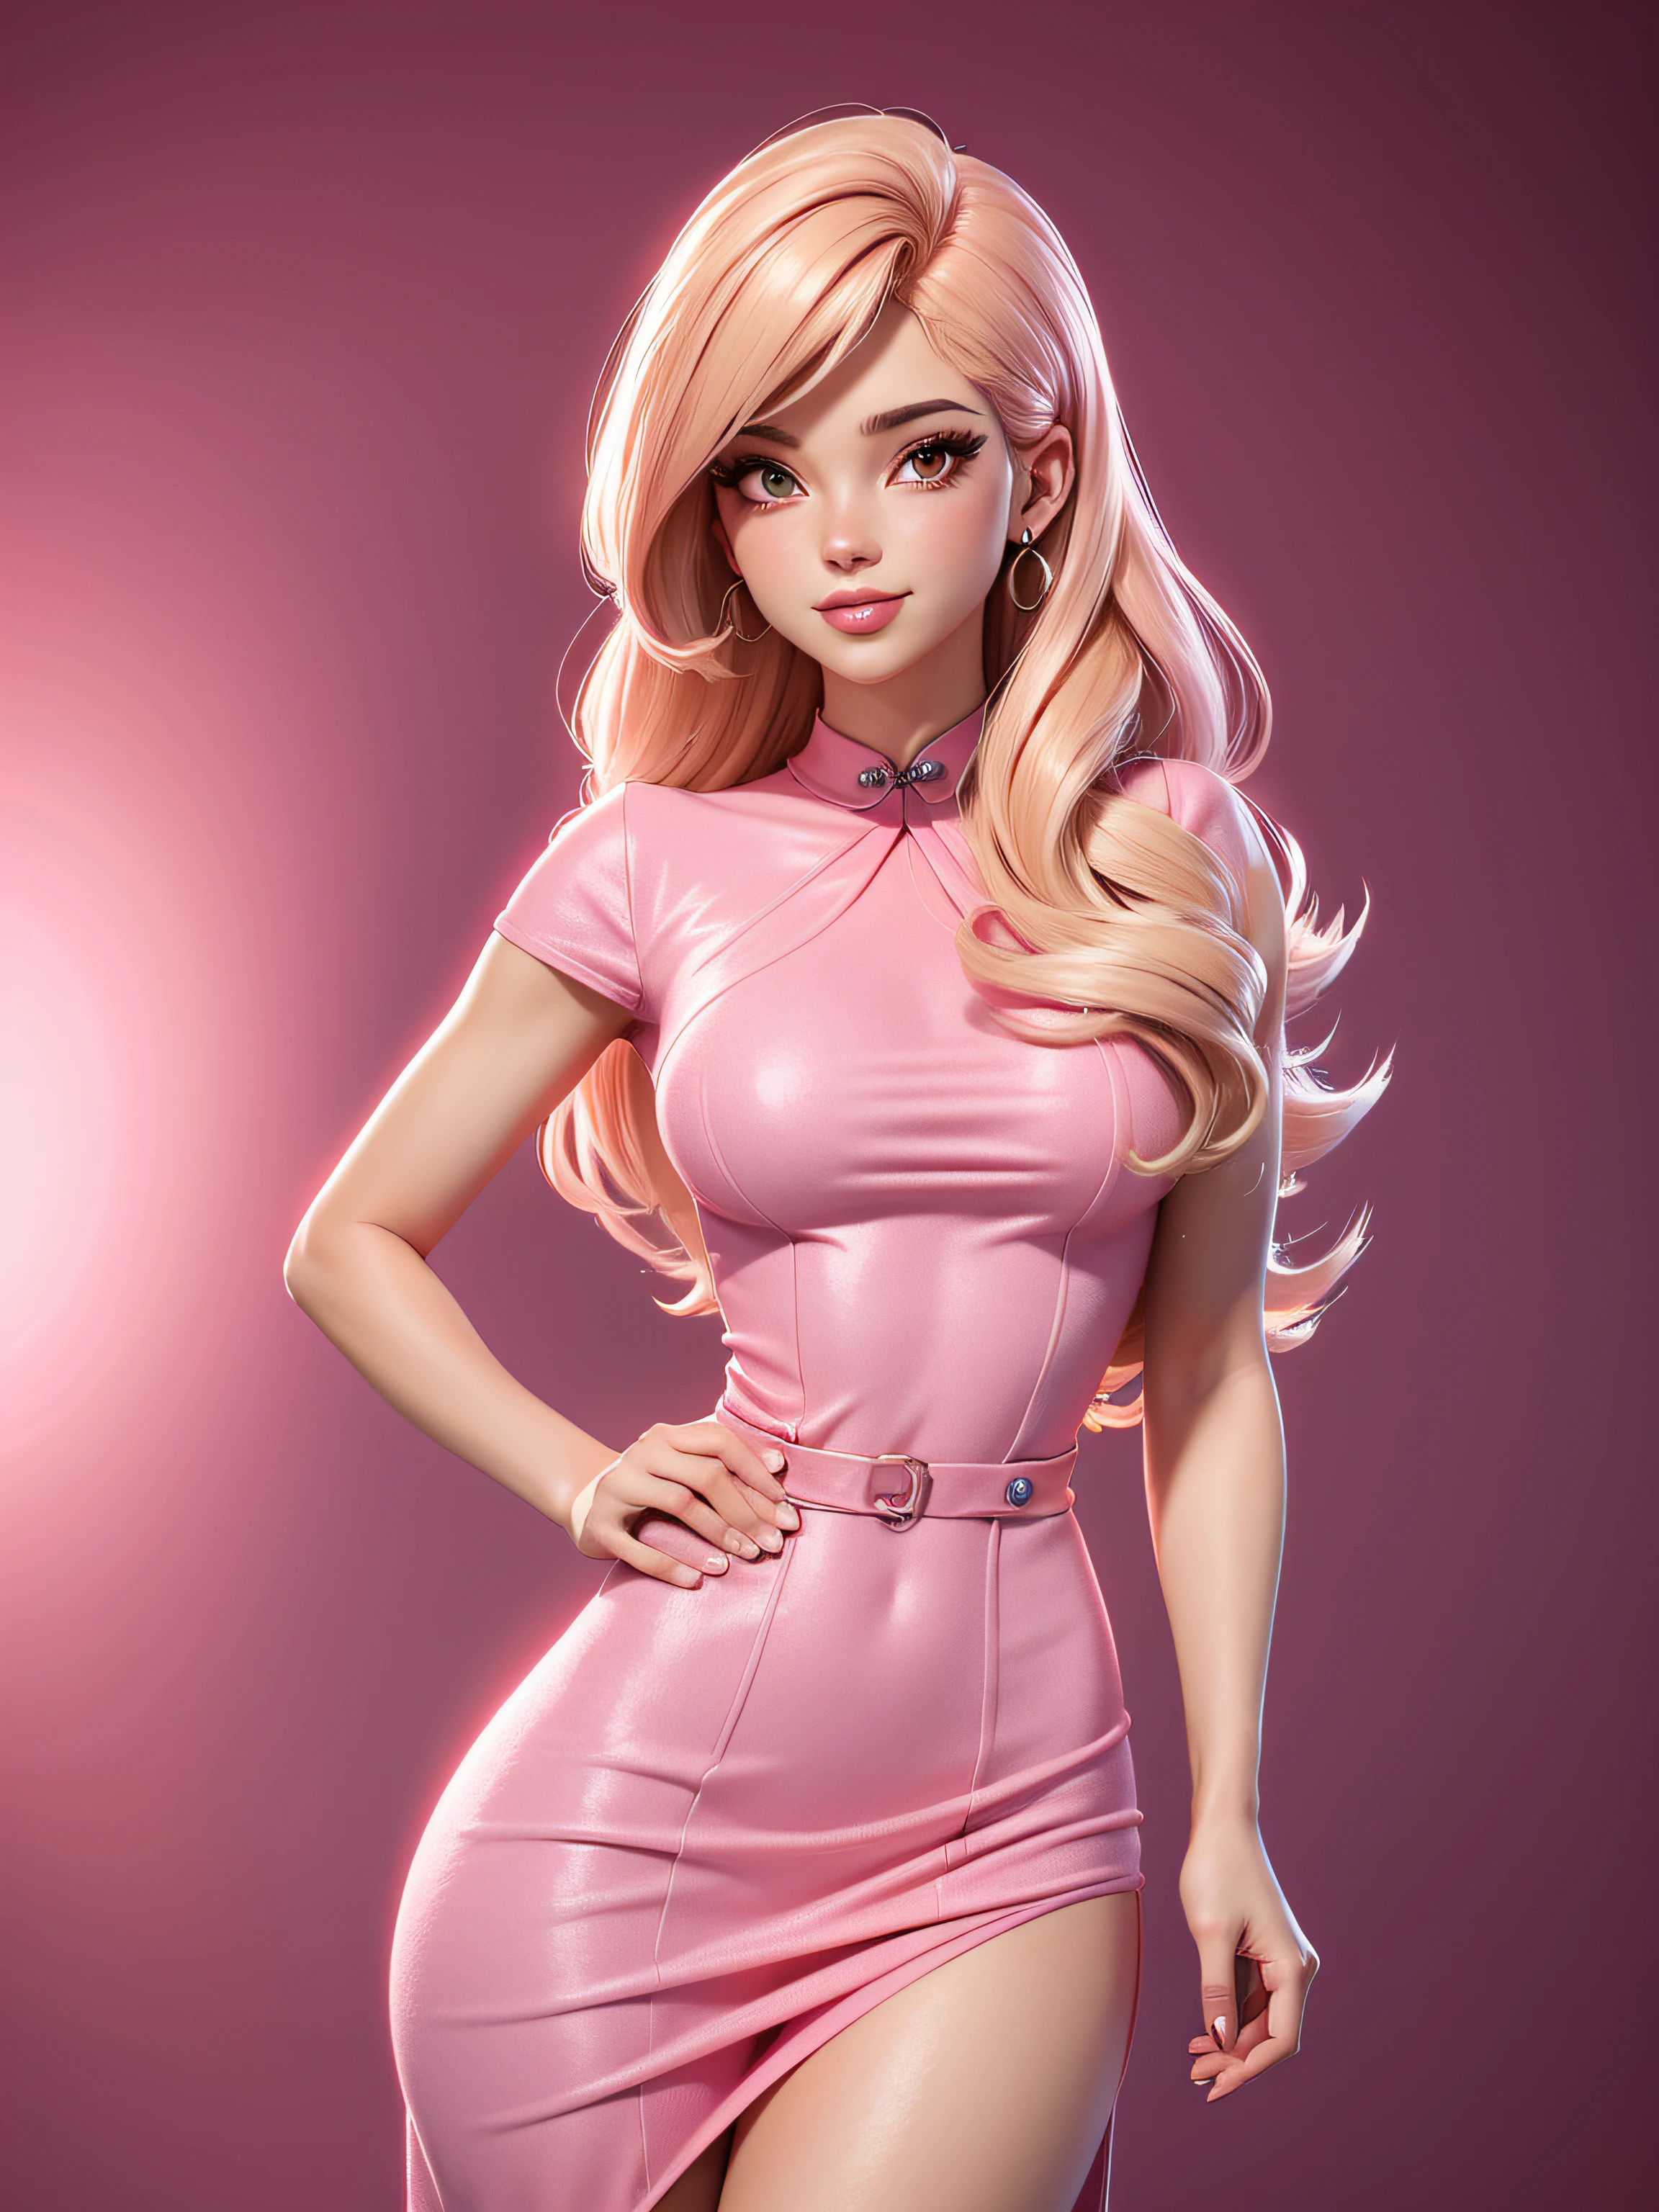  性感全身, 粉色 粉色 连衣裙, 与闪耀, 金髮, 华而不实的外观, 50年代卡通风格, 向量圖像, 沒有前因, 剪贴画风格